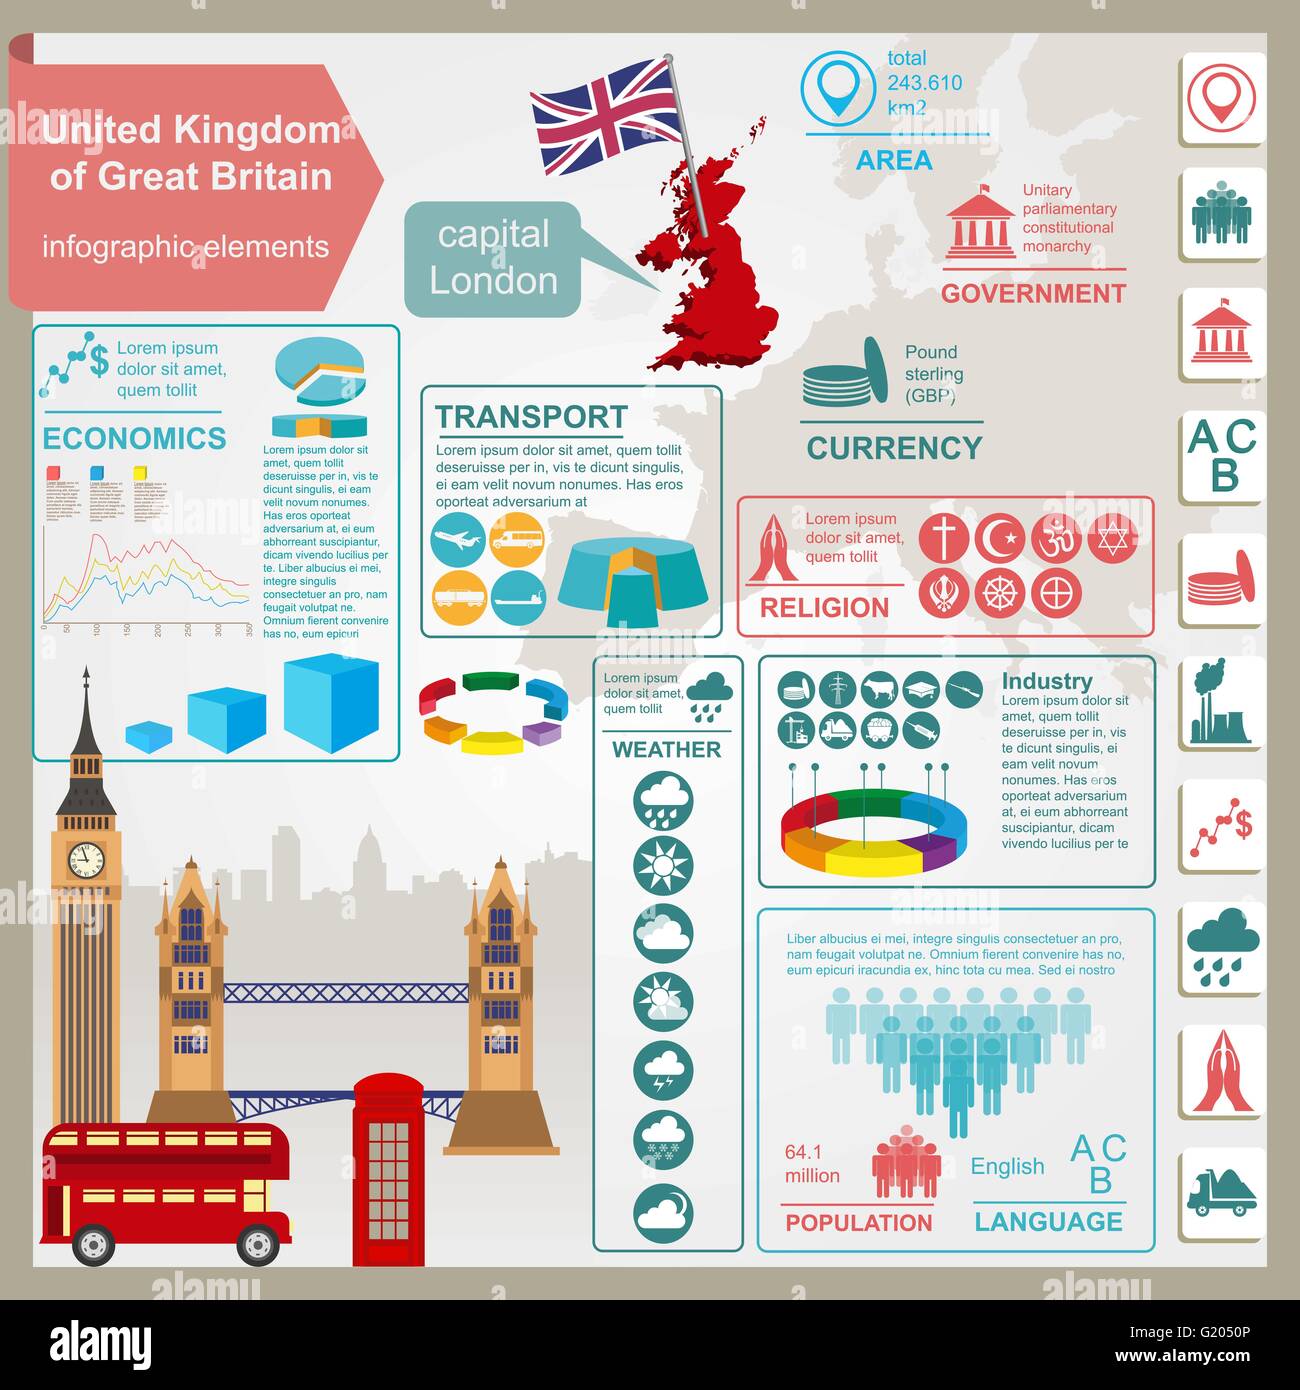 Regno Unito di Gran Bretagna infographics, dati statistici attrazioni. Illustrazione Vettoriale Illustrazione Vettoriale